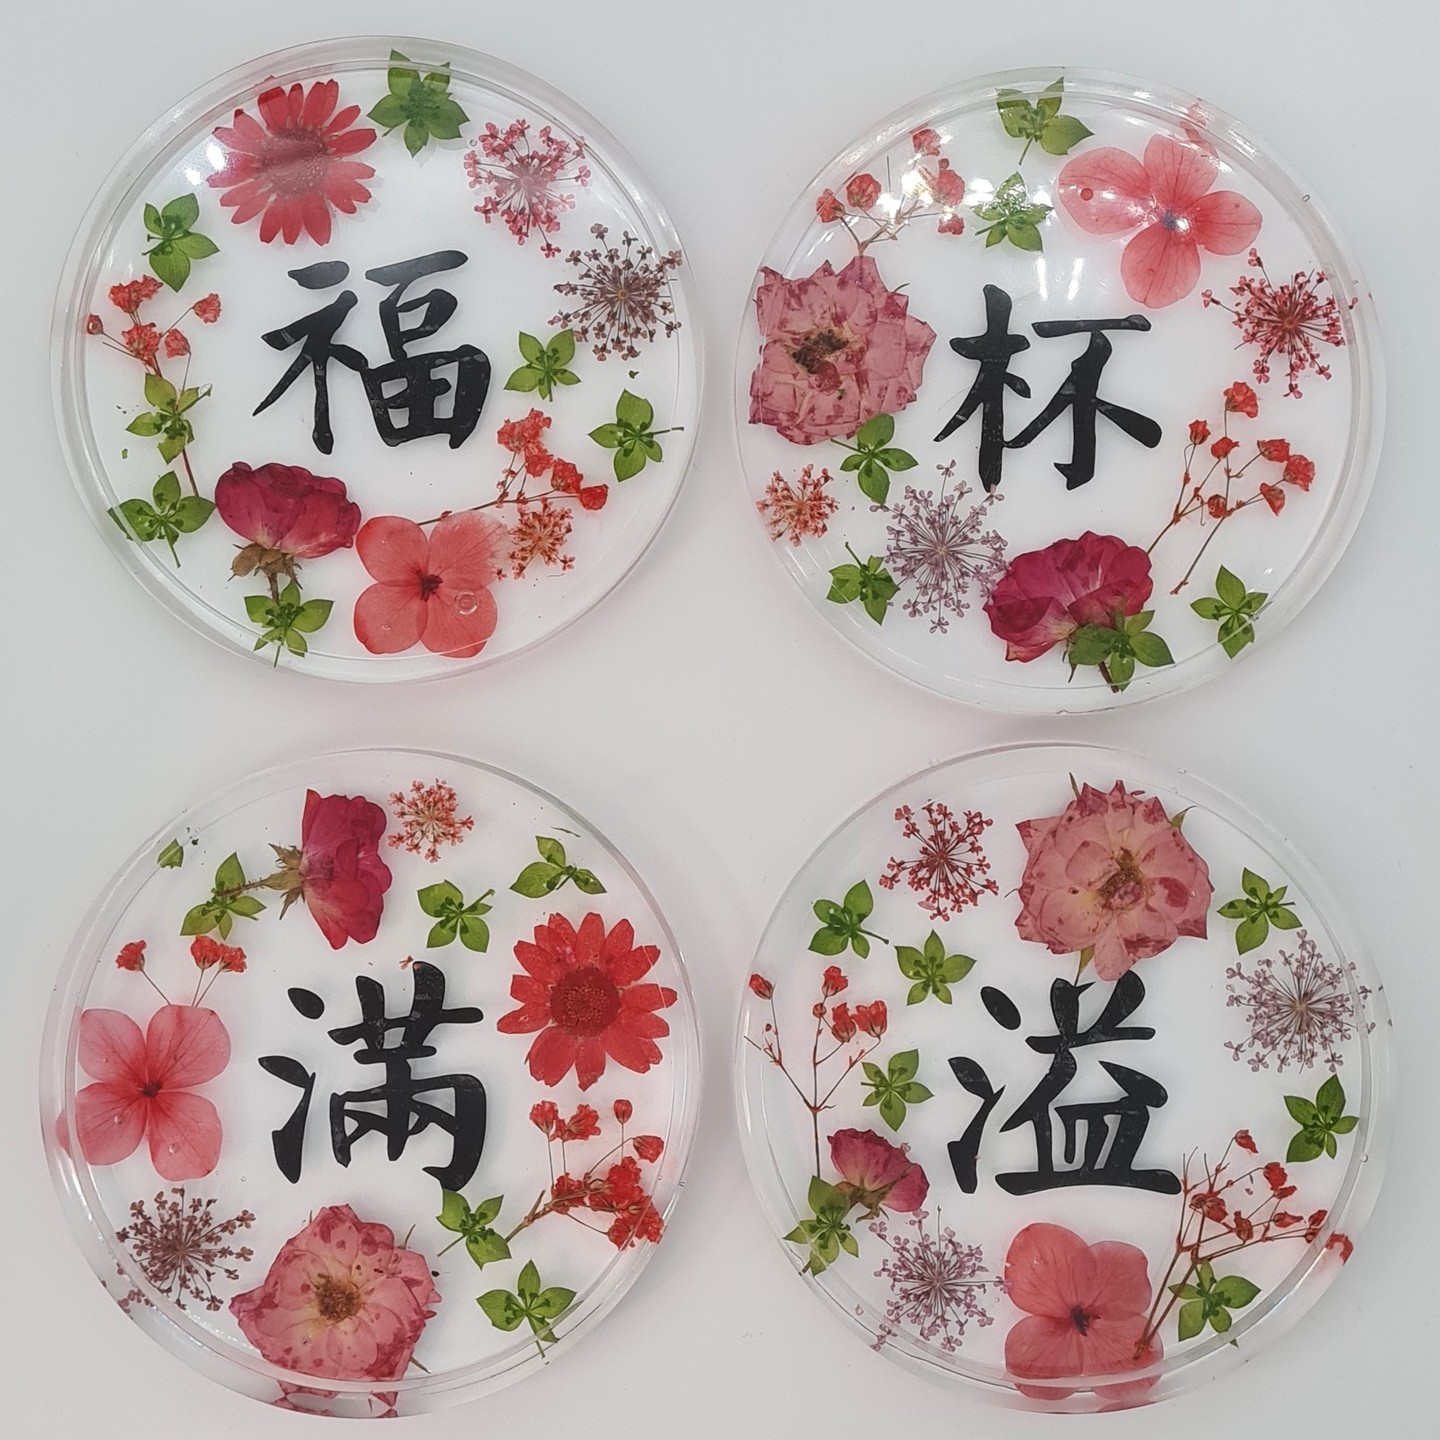 福杯满溢  CALLIGRAPHY SERIES  Real Pressed Flowers & Leaves Resin Coaster Handmade  Option of custom-made base